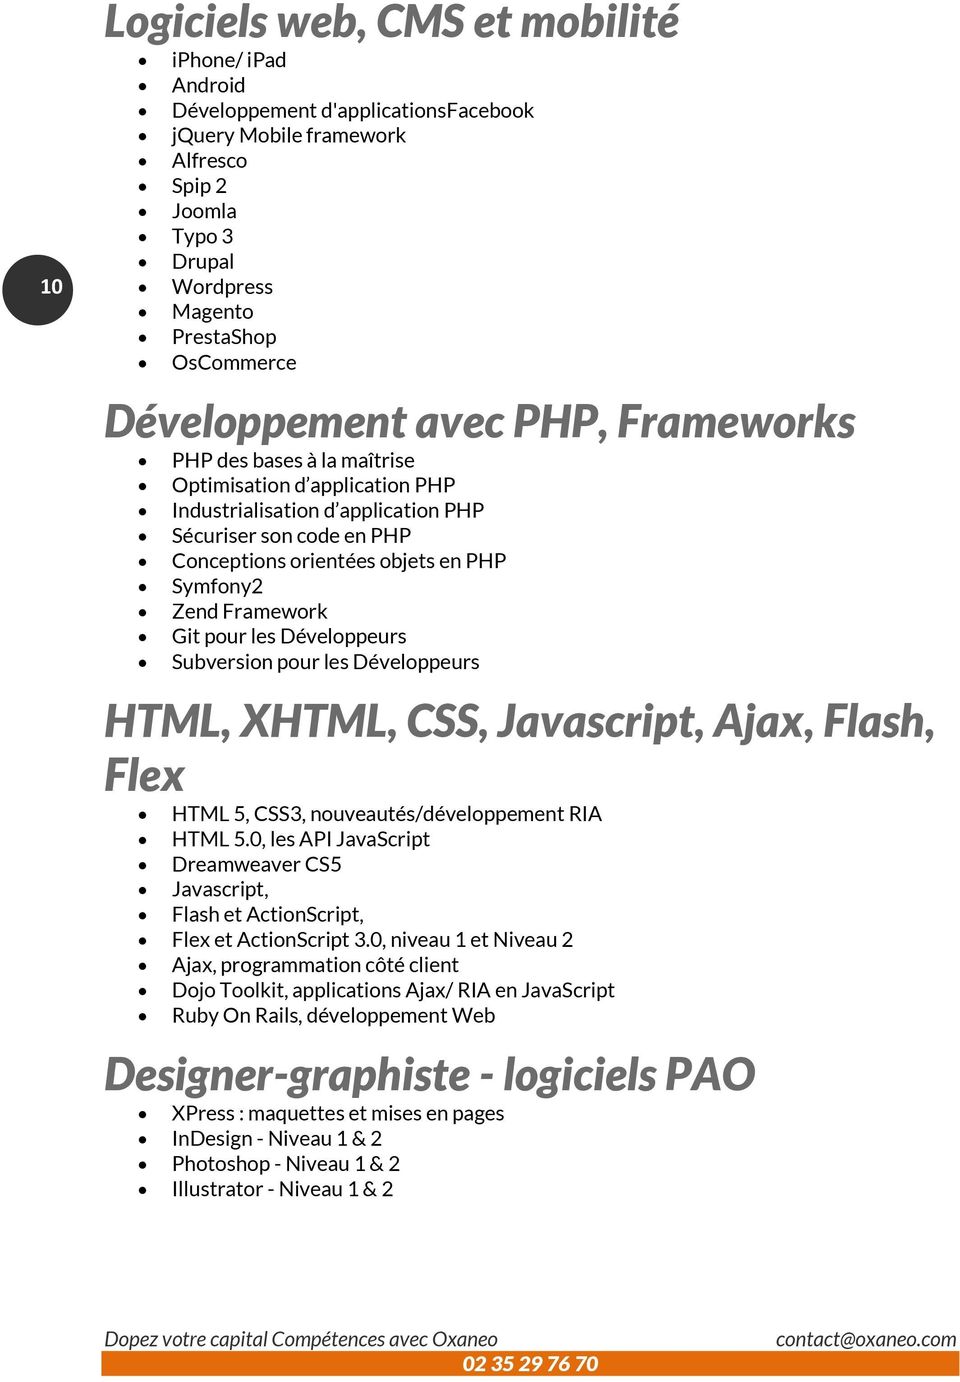 Symfony2 Zend Framework Git pour les Développeurs Subversion pour les Développeurs HTML, XHTML, CSS, Javascript, Ajax, Flash, Flex HTML 5, CSS3, nouveautés/développement RIA HTML 5.